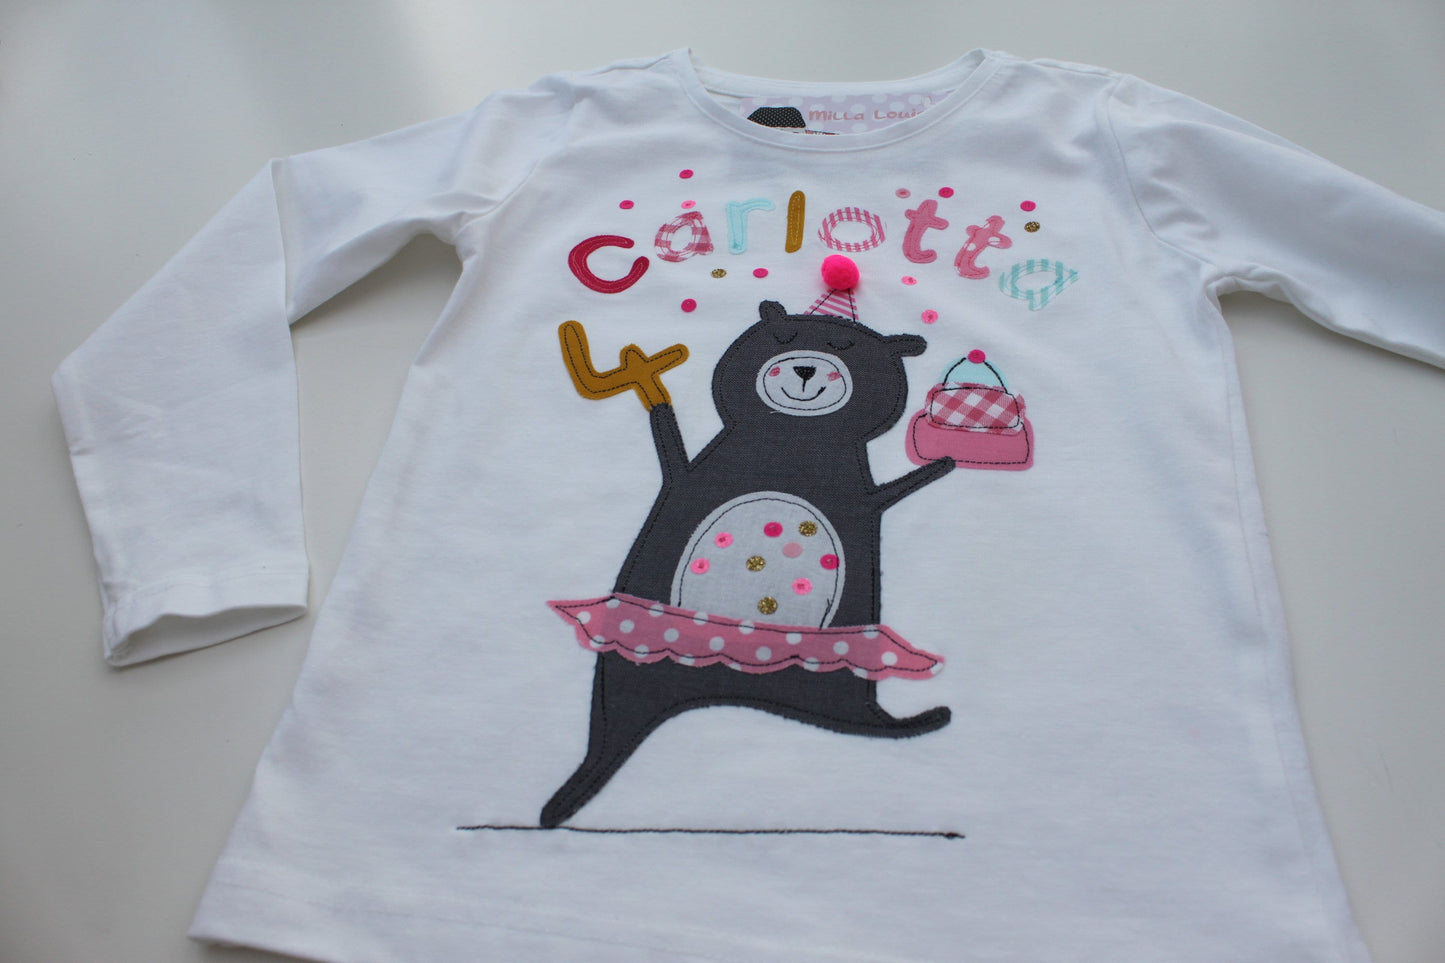 Geburtstagsshirt Kinder,Geburtstagsshirt,Shirt für Mädchen,Shirt mit Zahl,Shirt mit Name,Bär,T-Shirt,Ballerina,Cupcake,Konfetti,Milla Louise